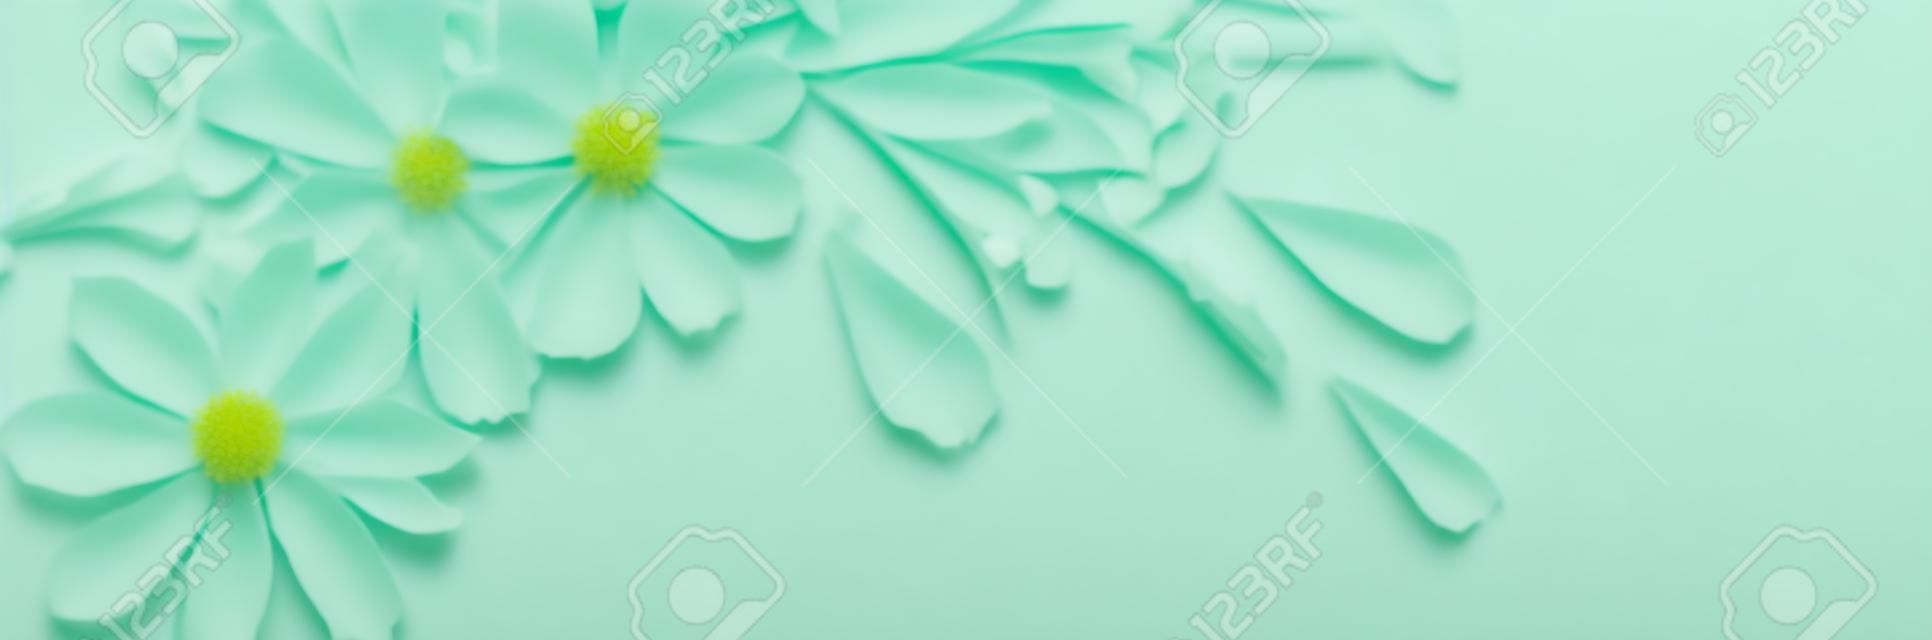 białe kwiaty na zielonym tle papieru